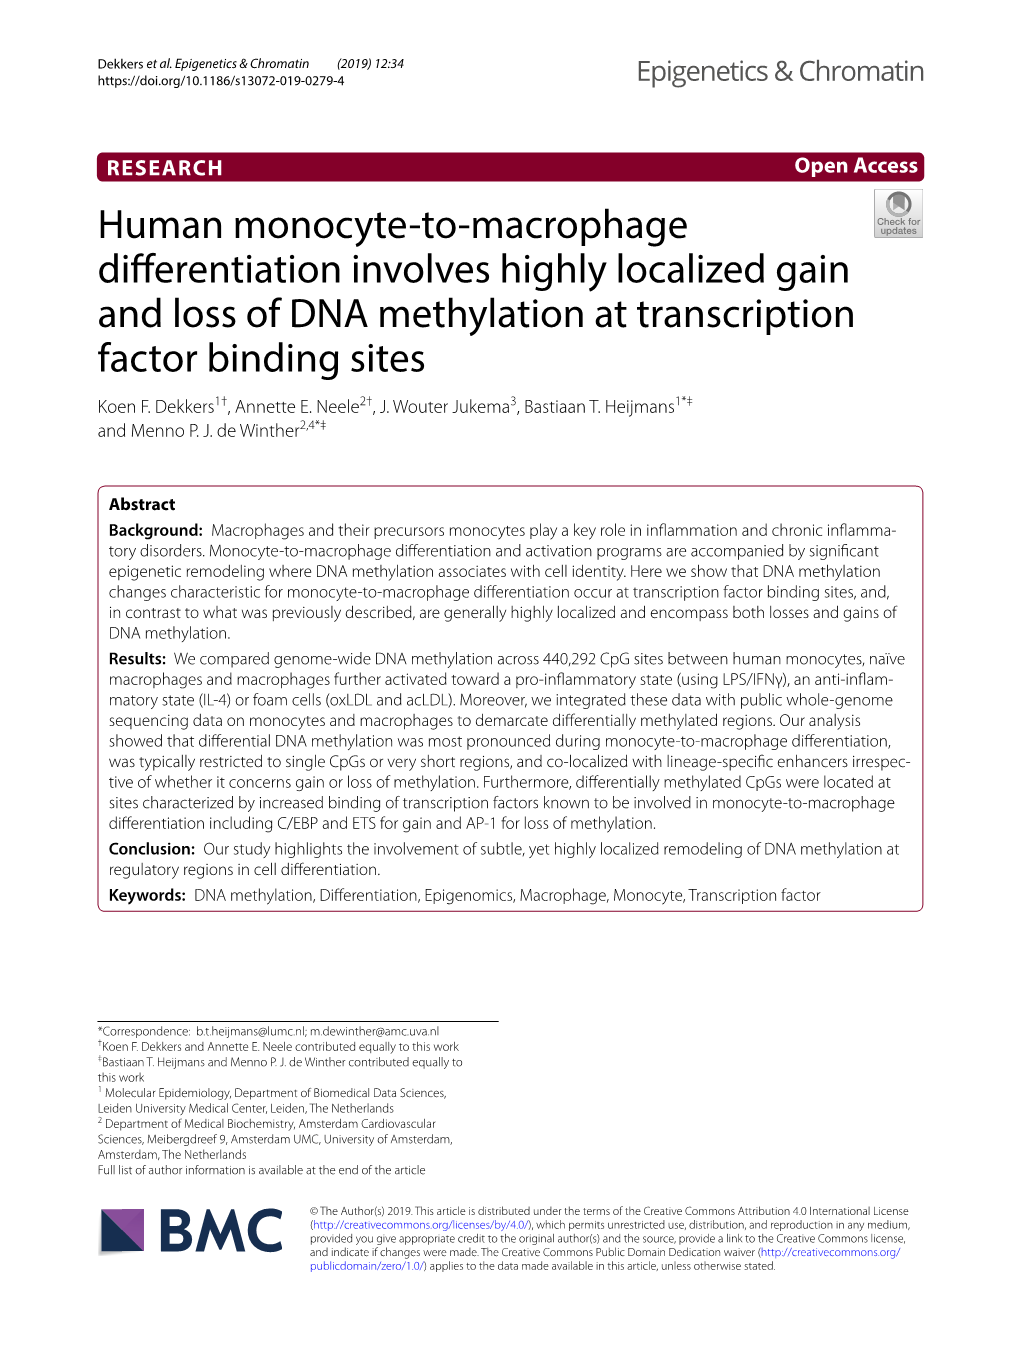 Human Monocyte-To-Macrophage